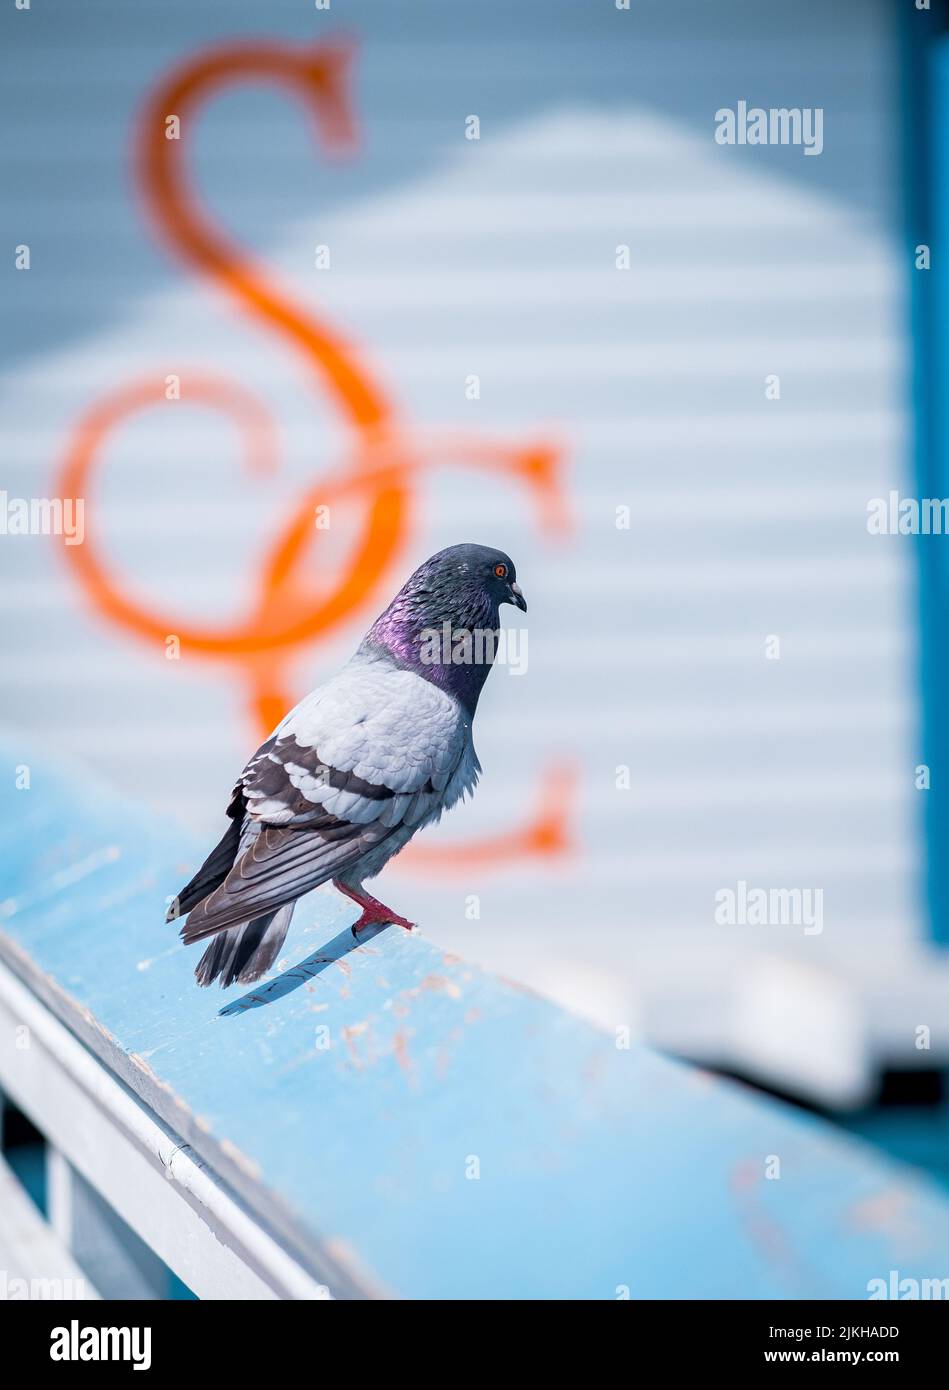 Eine vertikale Aufnahme einer kleinen Taube, die auf der Kante des Piers auf einem blauen Wandhintergrund steht Stockfoto